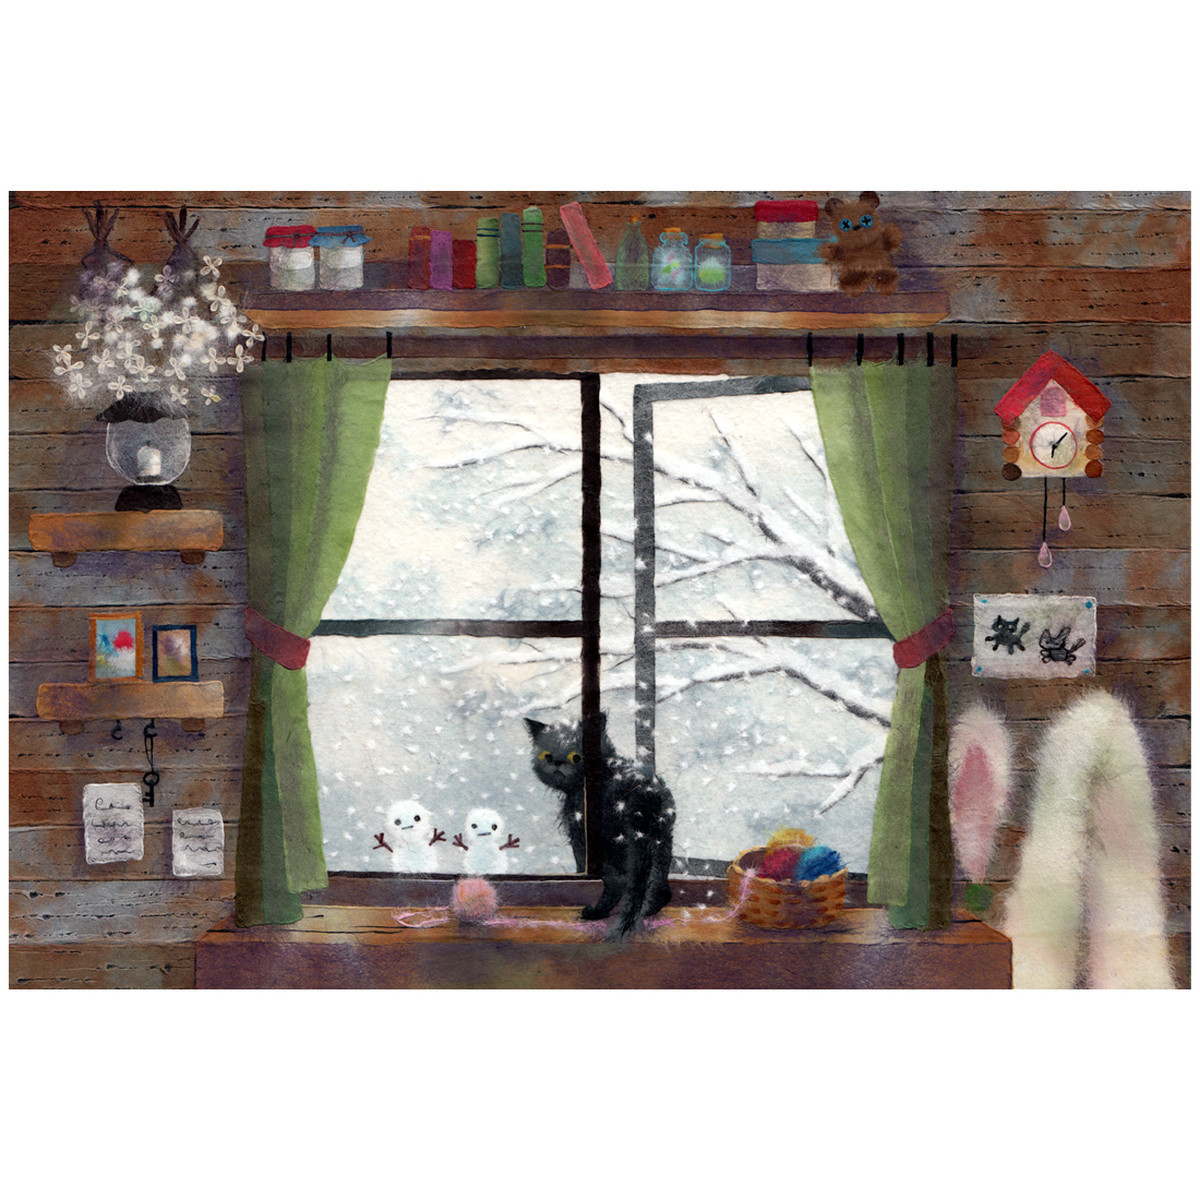 呼んだ 窓辺の黒猫シリーズ冬 かわいいイラスト ポストカード 和紙絵工房 和紙絵作品のプリントweb通販